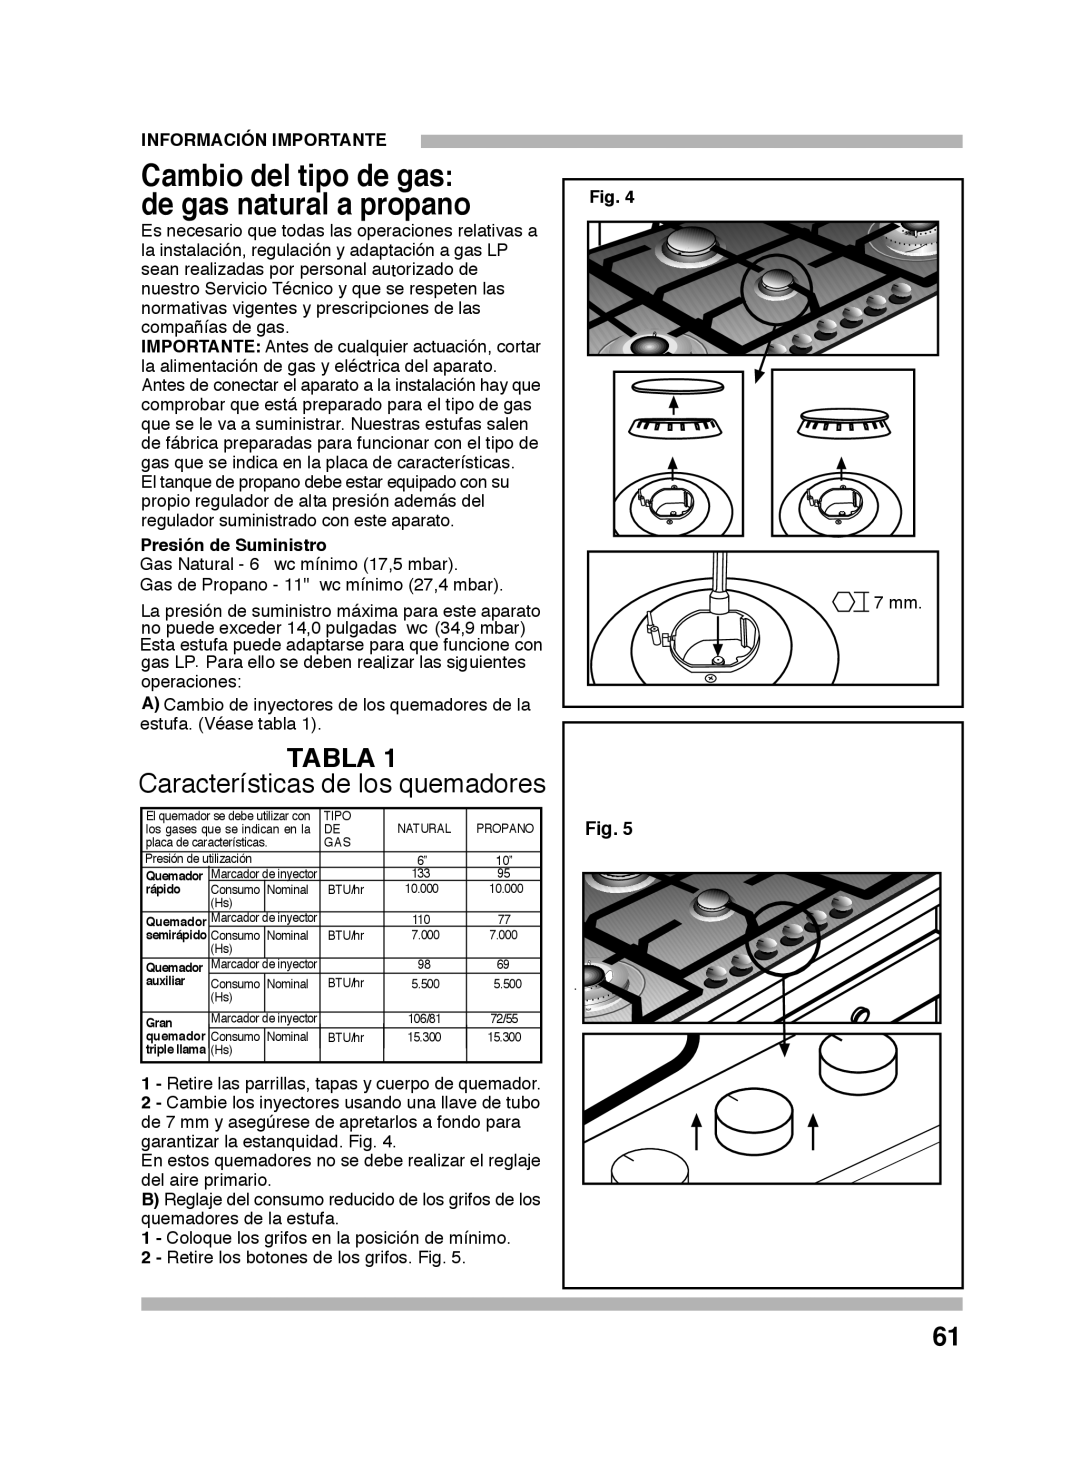 Bosch Appliances PGL985UC manual Cambio del tipo de gas, de gas natural a propano, Tabla, Características de los quemadores 